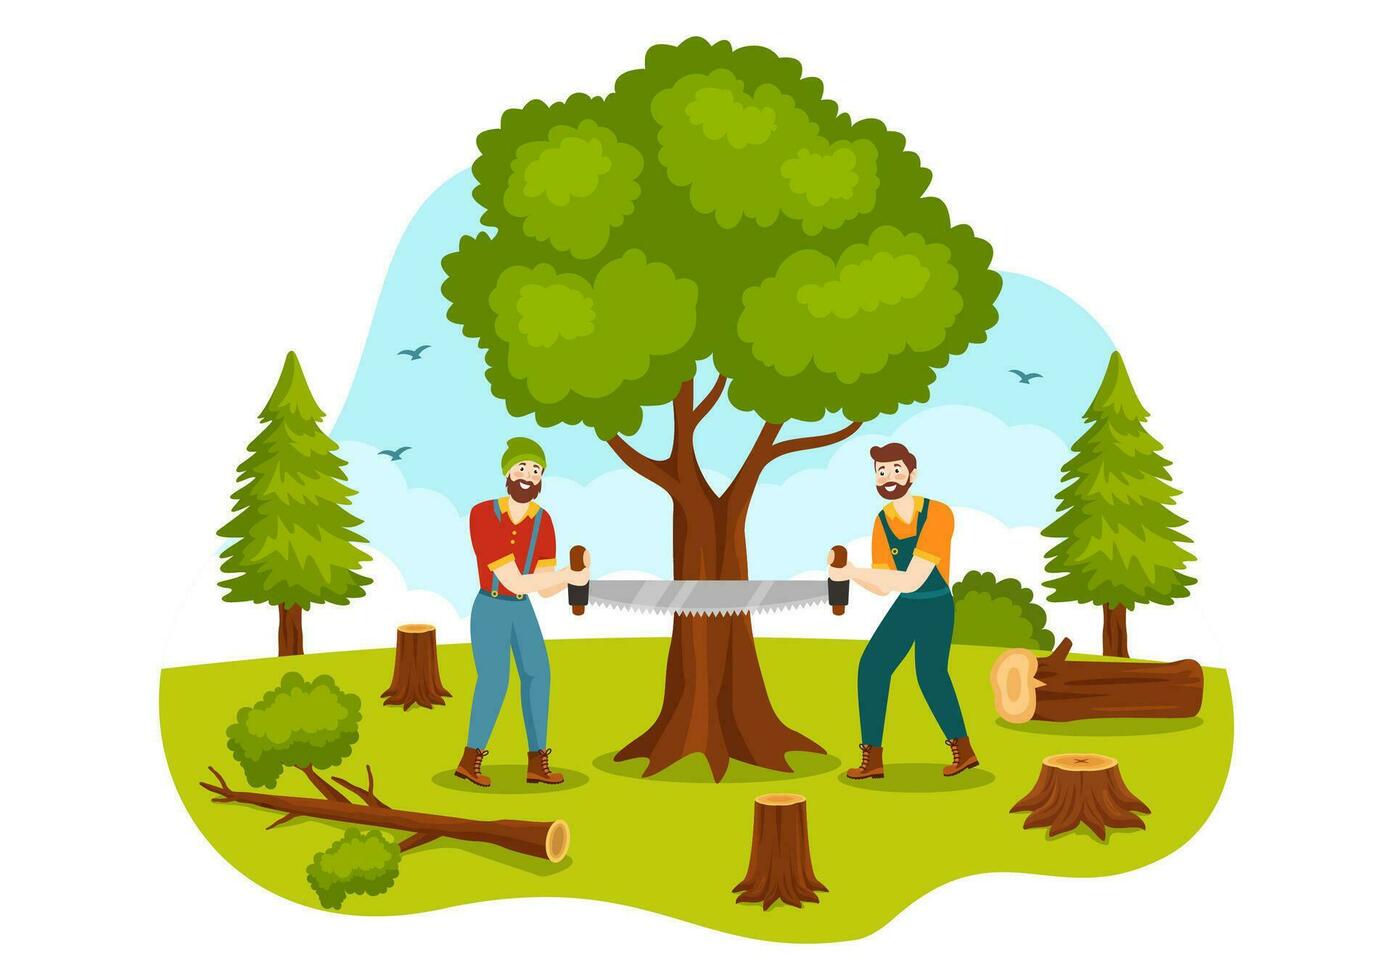 män hackning trä och skärande träd med skogsarbetare arbete Utrustning maskineri eller motorsåg i platt tecknad serie bakgrund mallar vektor illustration